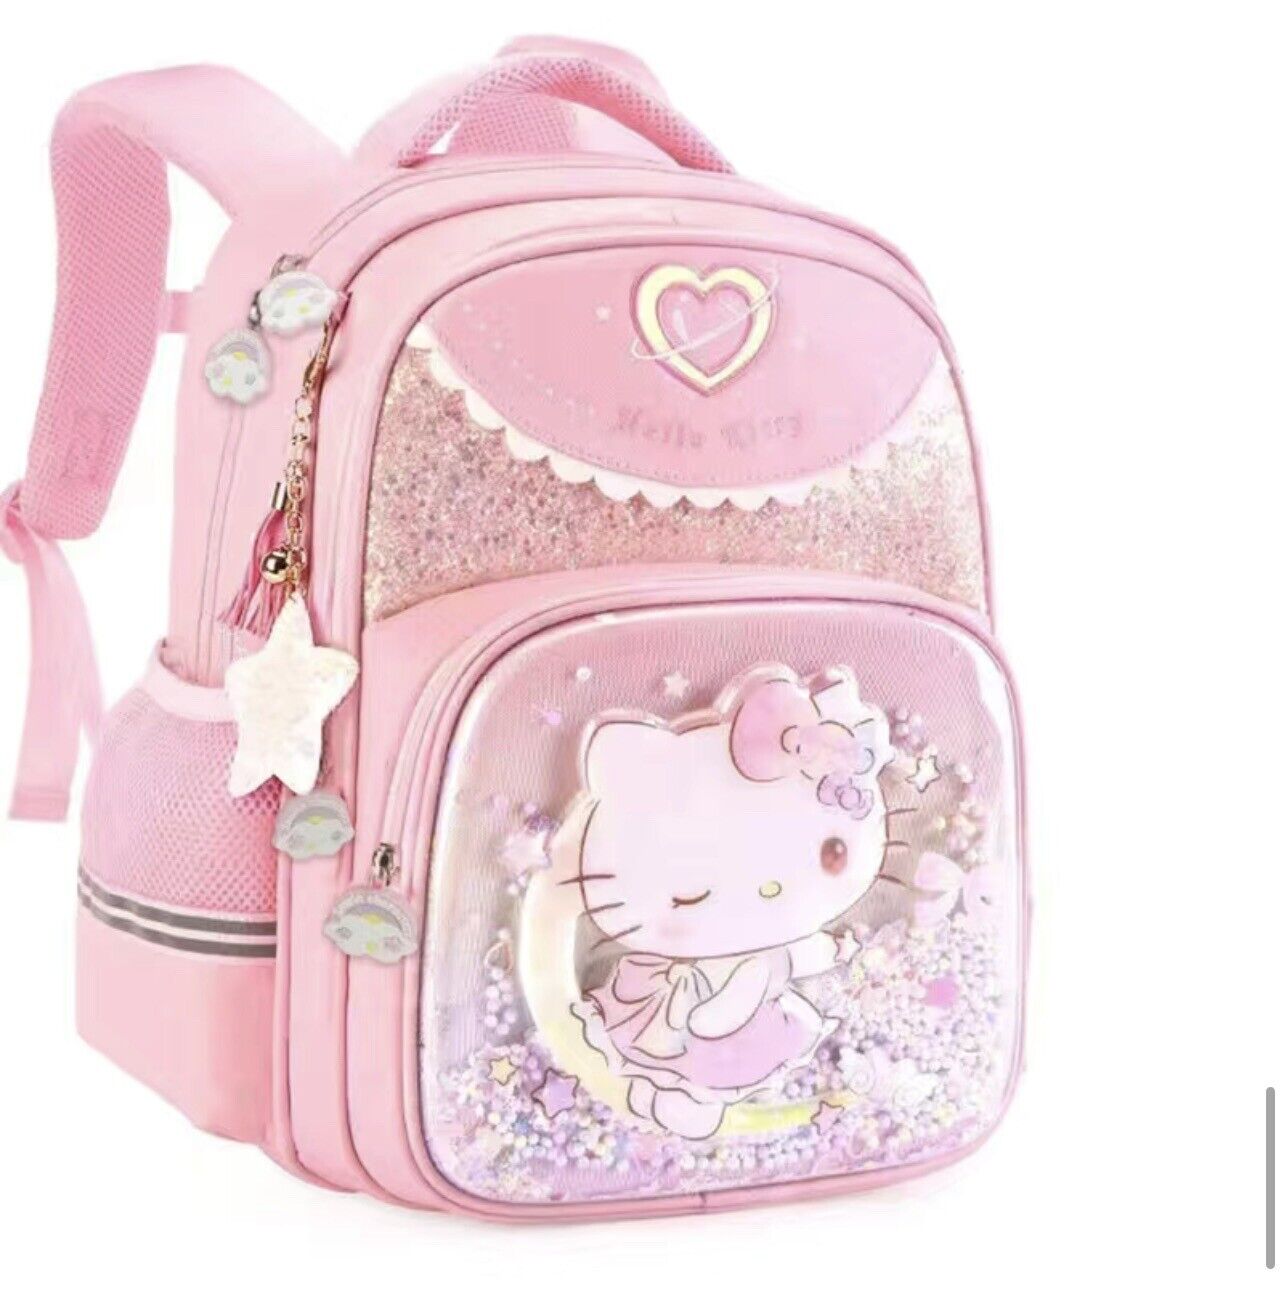 Sanrio Hello Kitty BackPack Bag Book Bag Back To School Kawaii Kids Pink